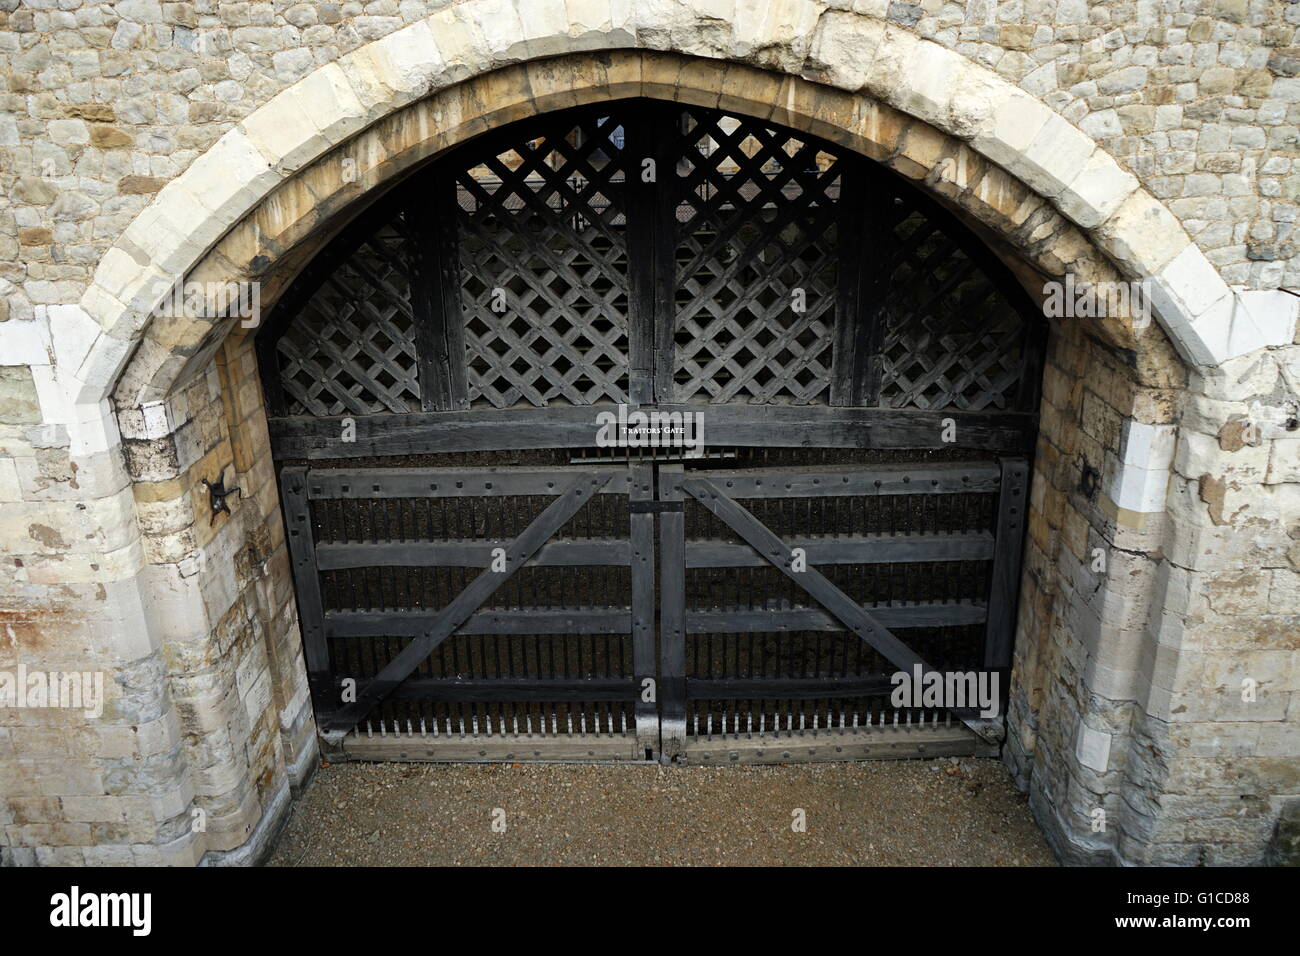 La porte des traîtres à la Tour de Londres. Le prisonnier serait entré dans la Tour de Londres par cette porte. Construit par Édouard I (1239-1307). En date du 13e siècle Banque D'Images